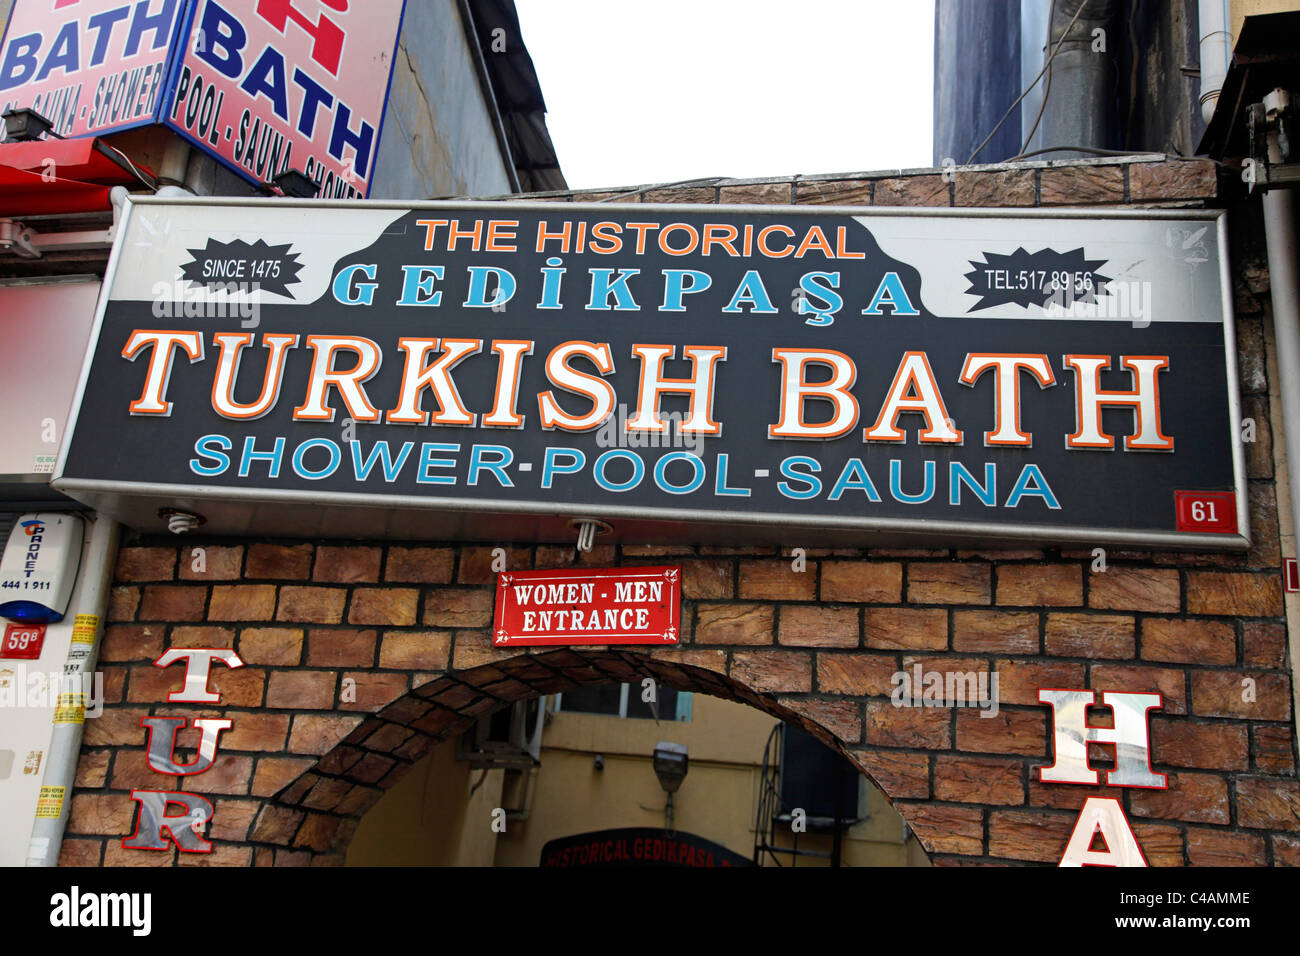 Hamam turc et un sauna à Istanbul, Turquie Banque D'Images